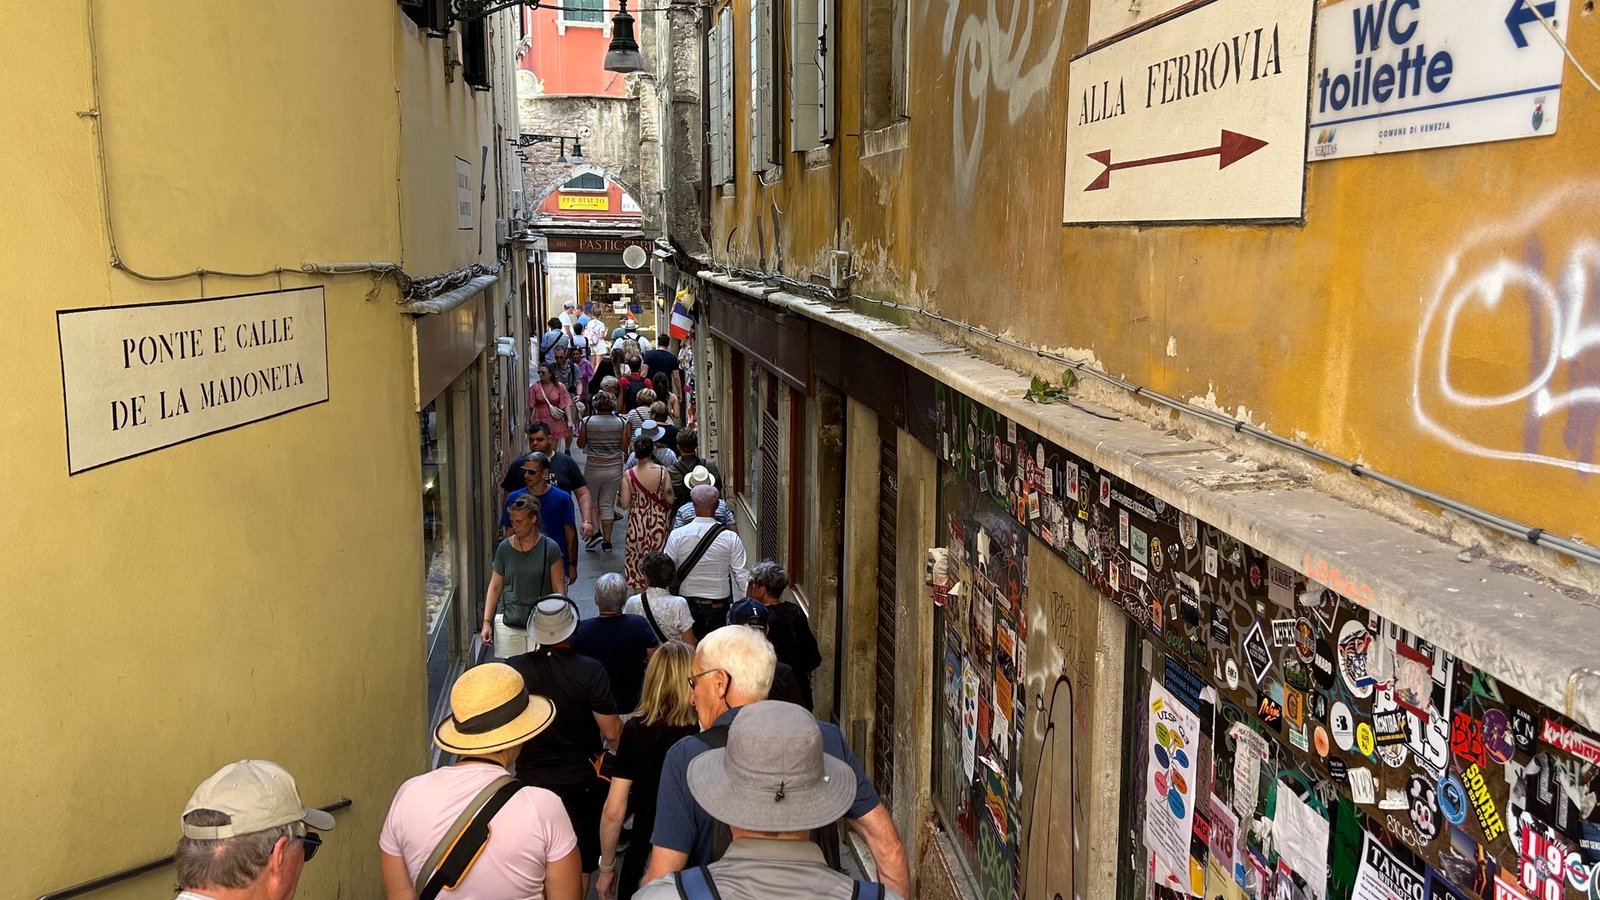 Besucher drängen sich in der "Calle de la Madoneta", eine der engen Gassen Venedigs.Foto: Christoph Sator/dpa